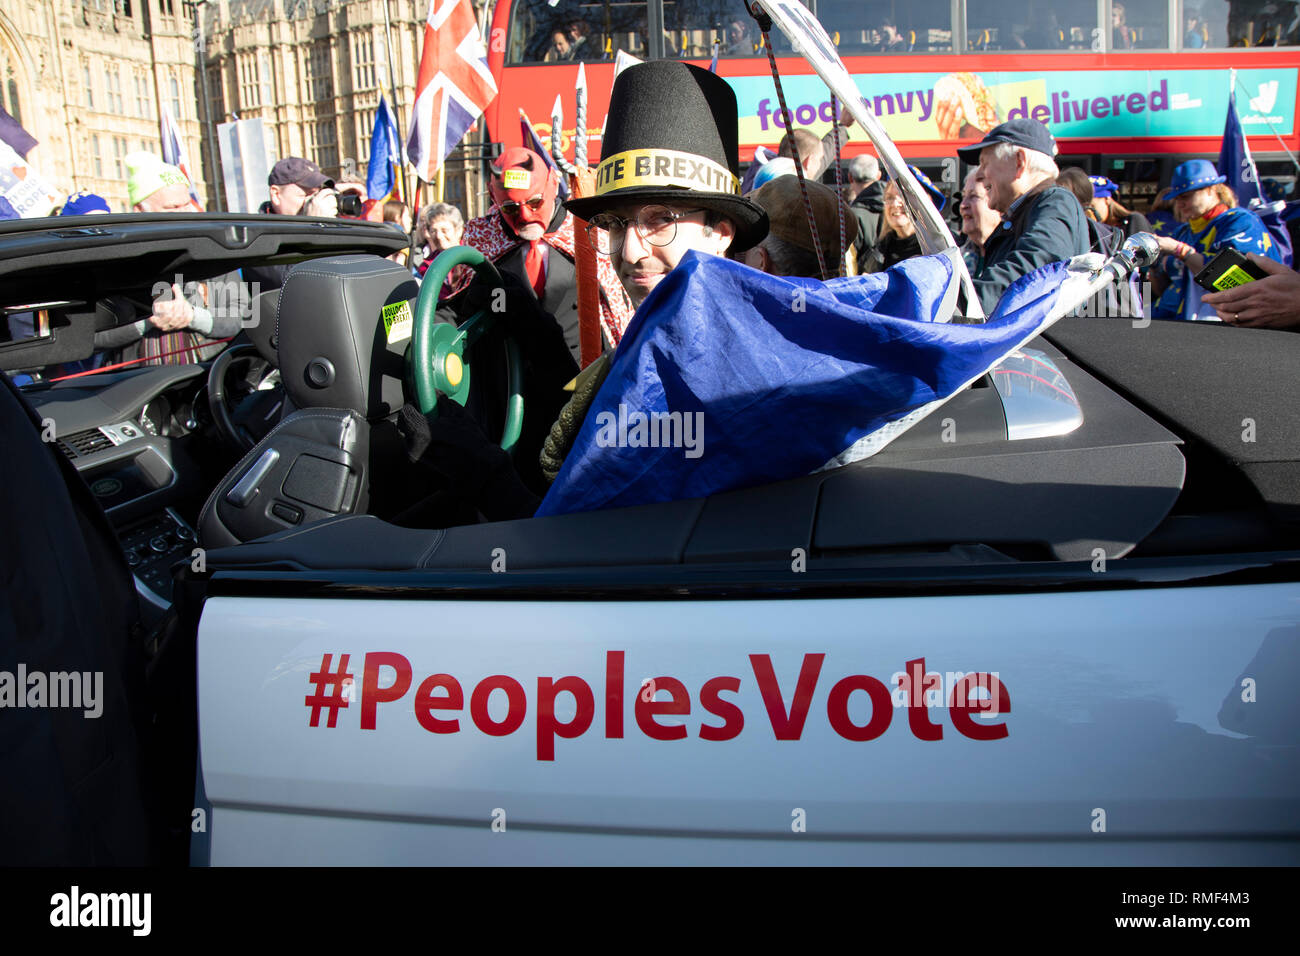 Vote partisan comme peuples Jacob Rees Mogg n certains siège arrière au volant comme Anti Brexit pro Europe manifestants protester à Westminster, en face du Parlement en tant que députés de débattre et de voter sur les amendements à l'accord de retrait des plans sur 14 février 2019 à Londres, Angleterre, Royaume-Uni. Banque D'Images